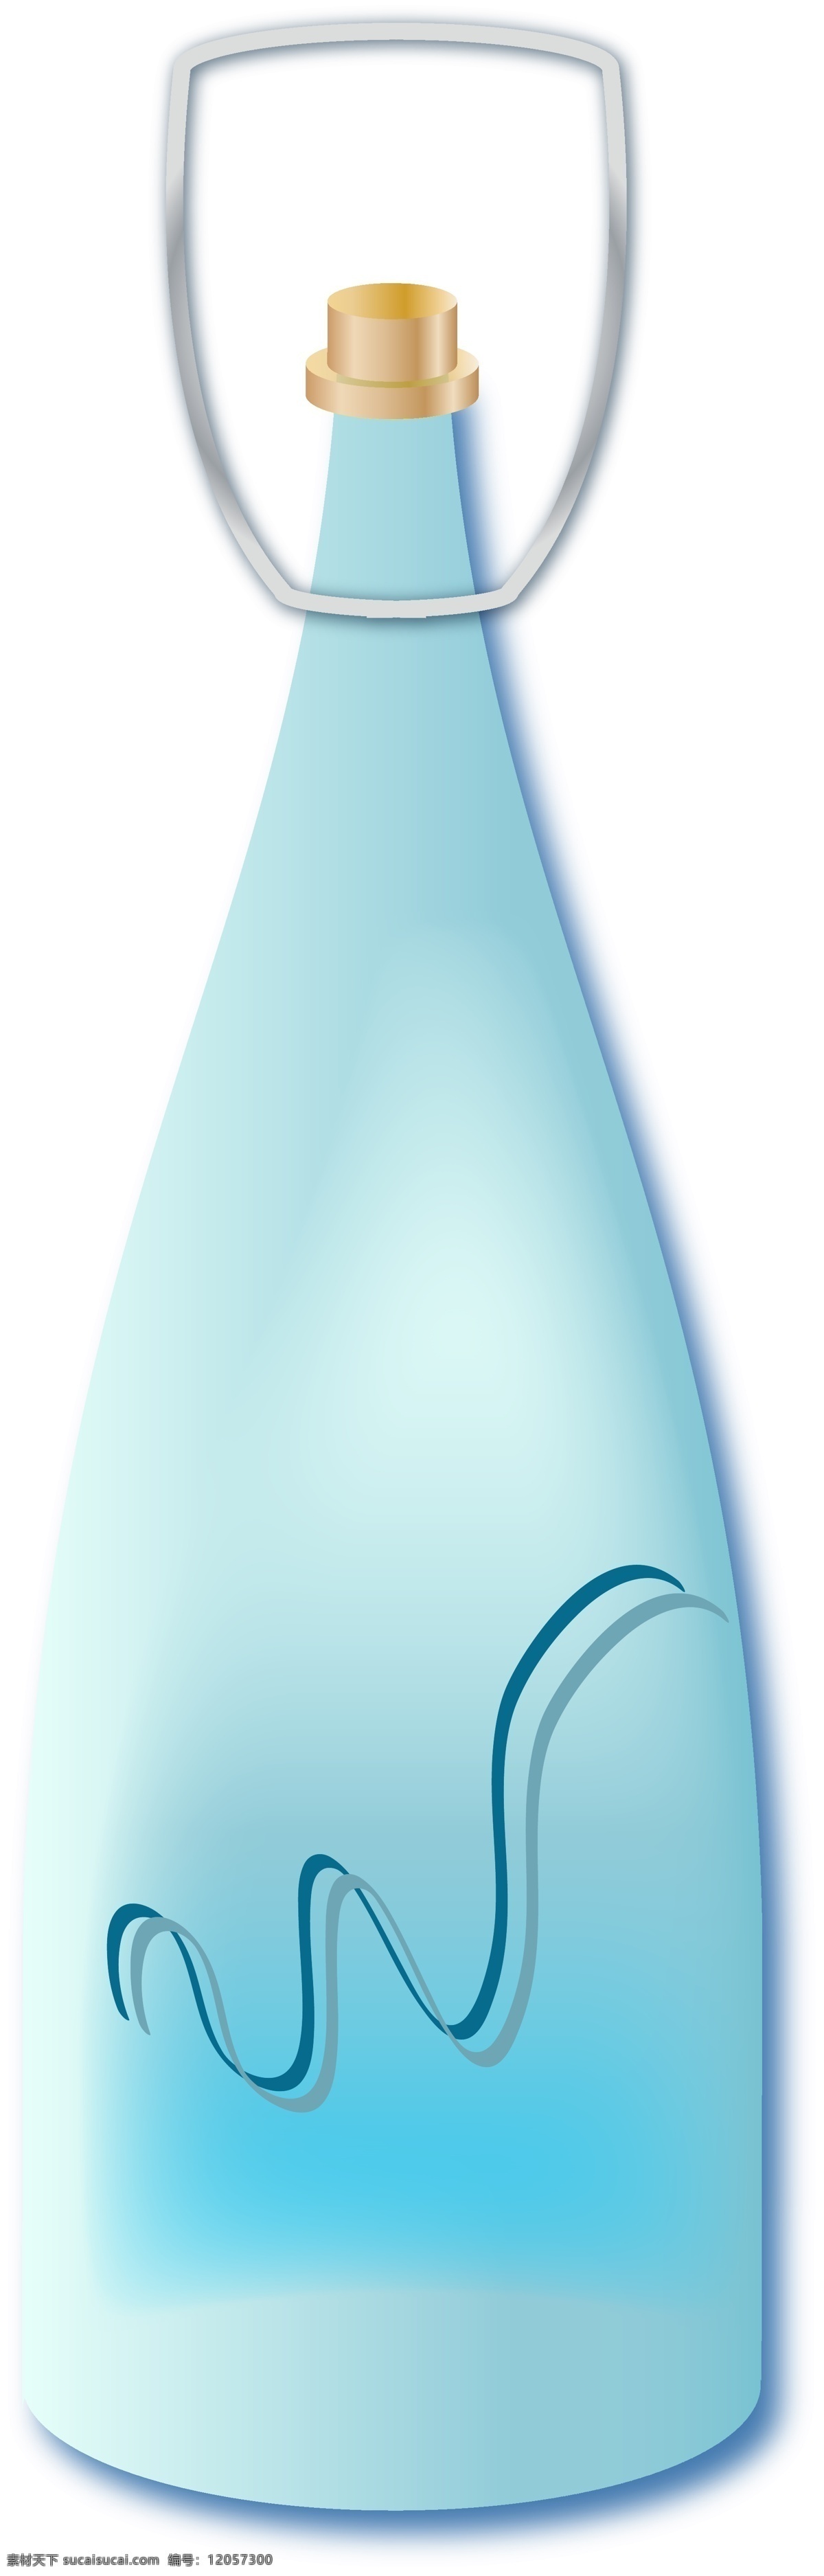 立体 磨砂 感 蓝色 玻璃瓶 瓶子 酒瓶 瓶罐 水瓶 2.5d 磨砂玻璃瓶 瓶